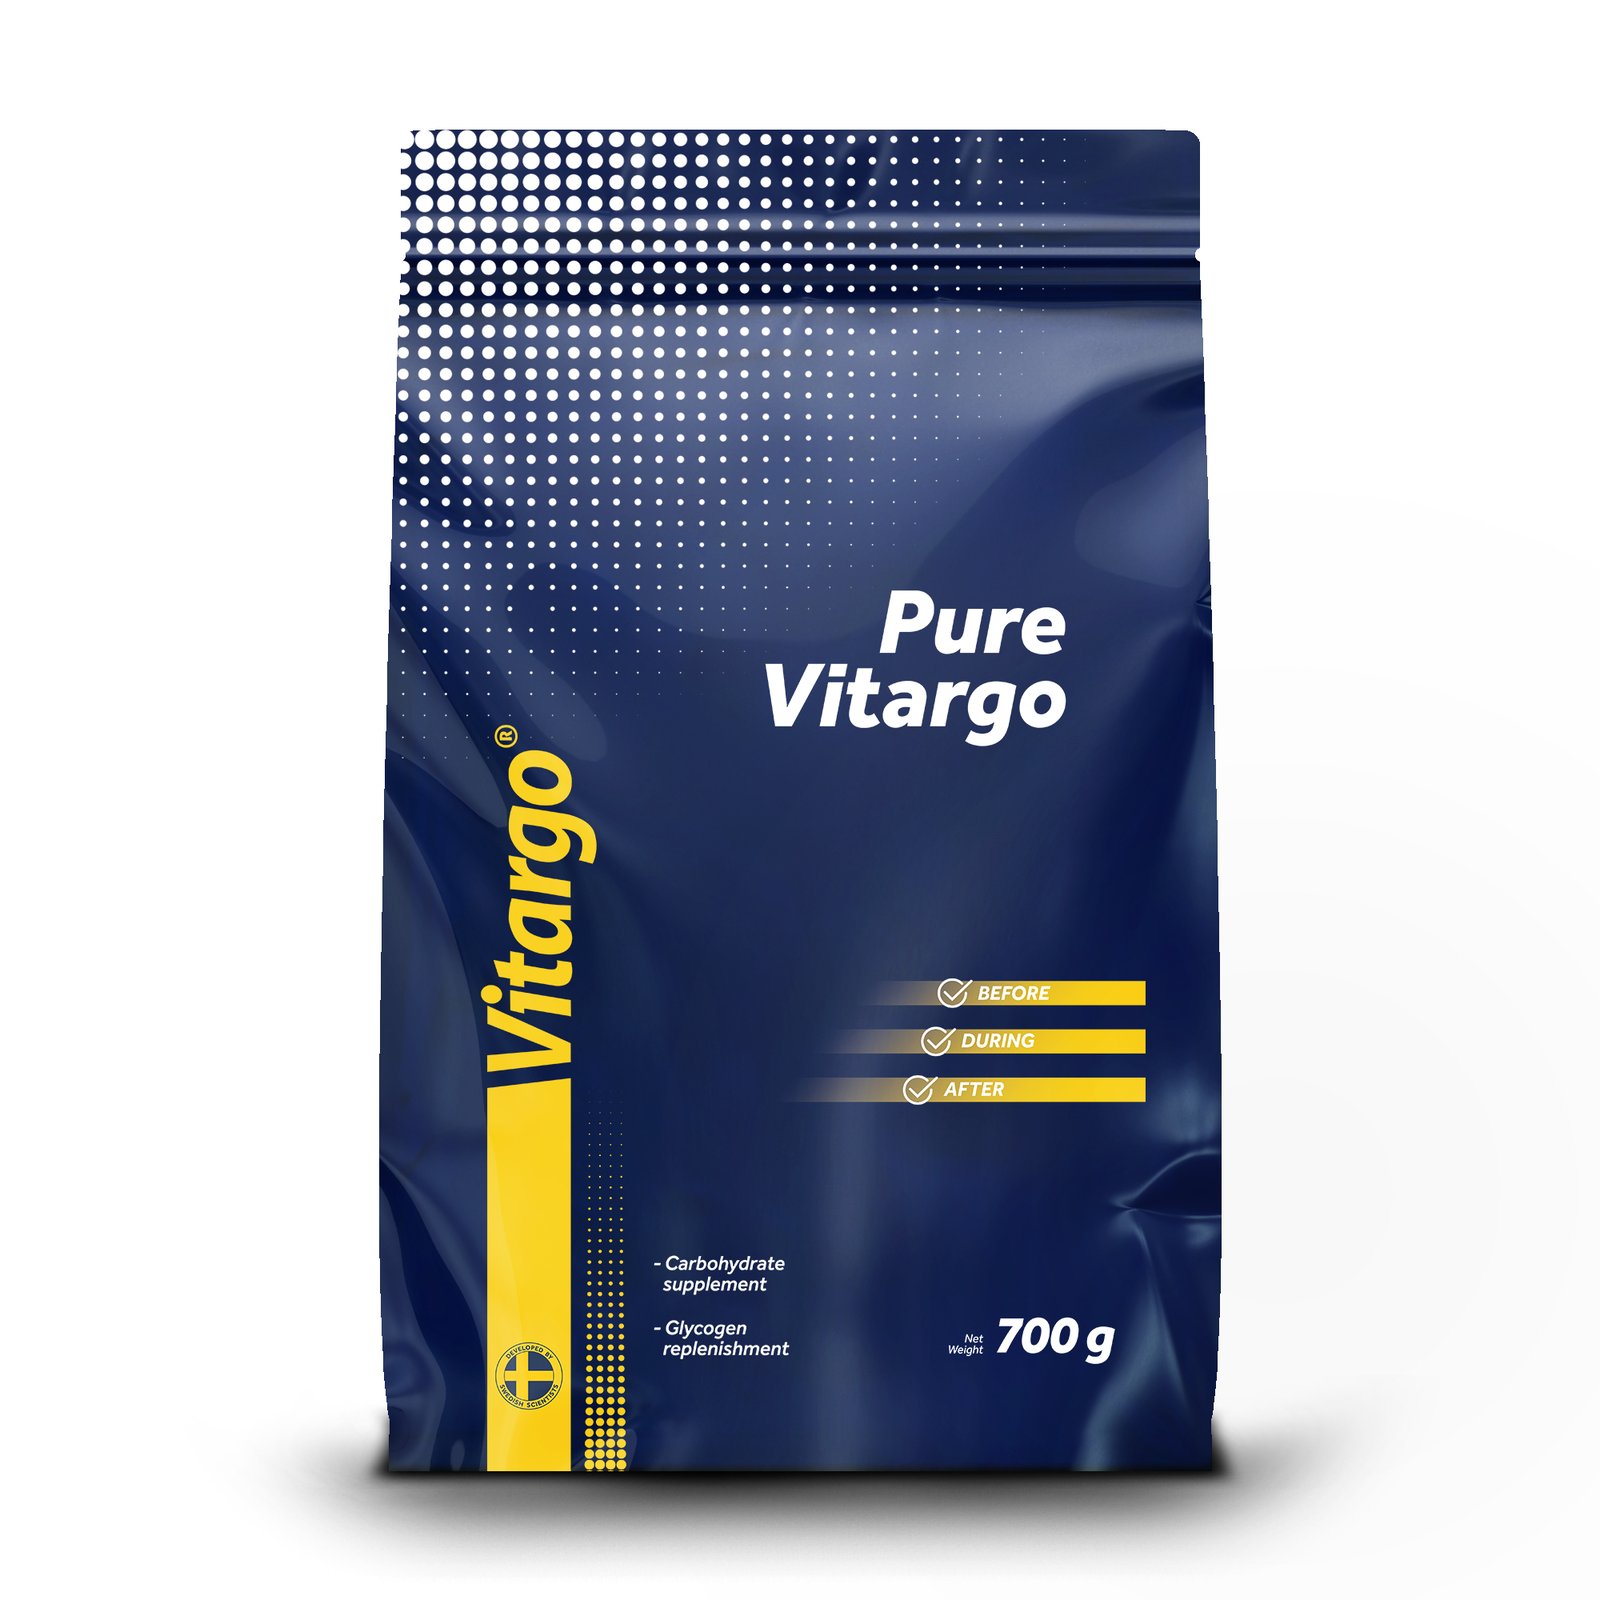 Vitargo Pure Naturell 700g